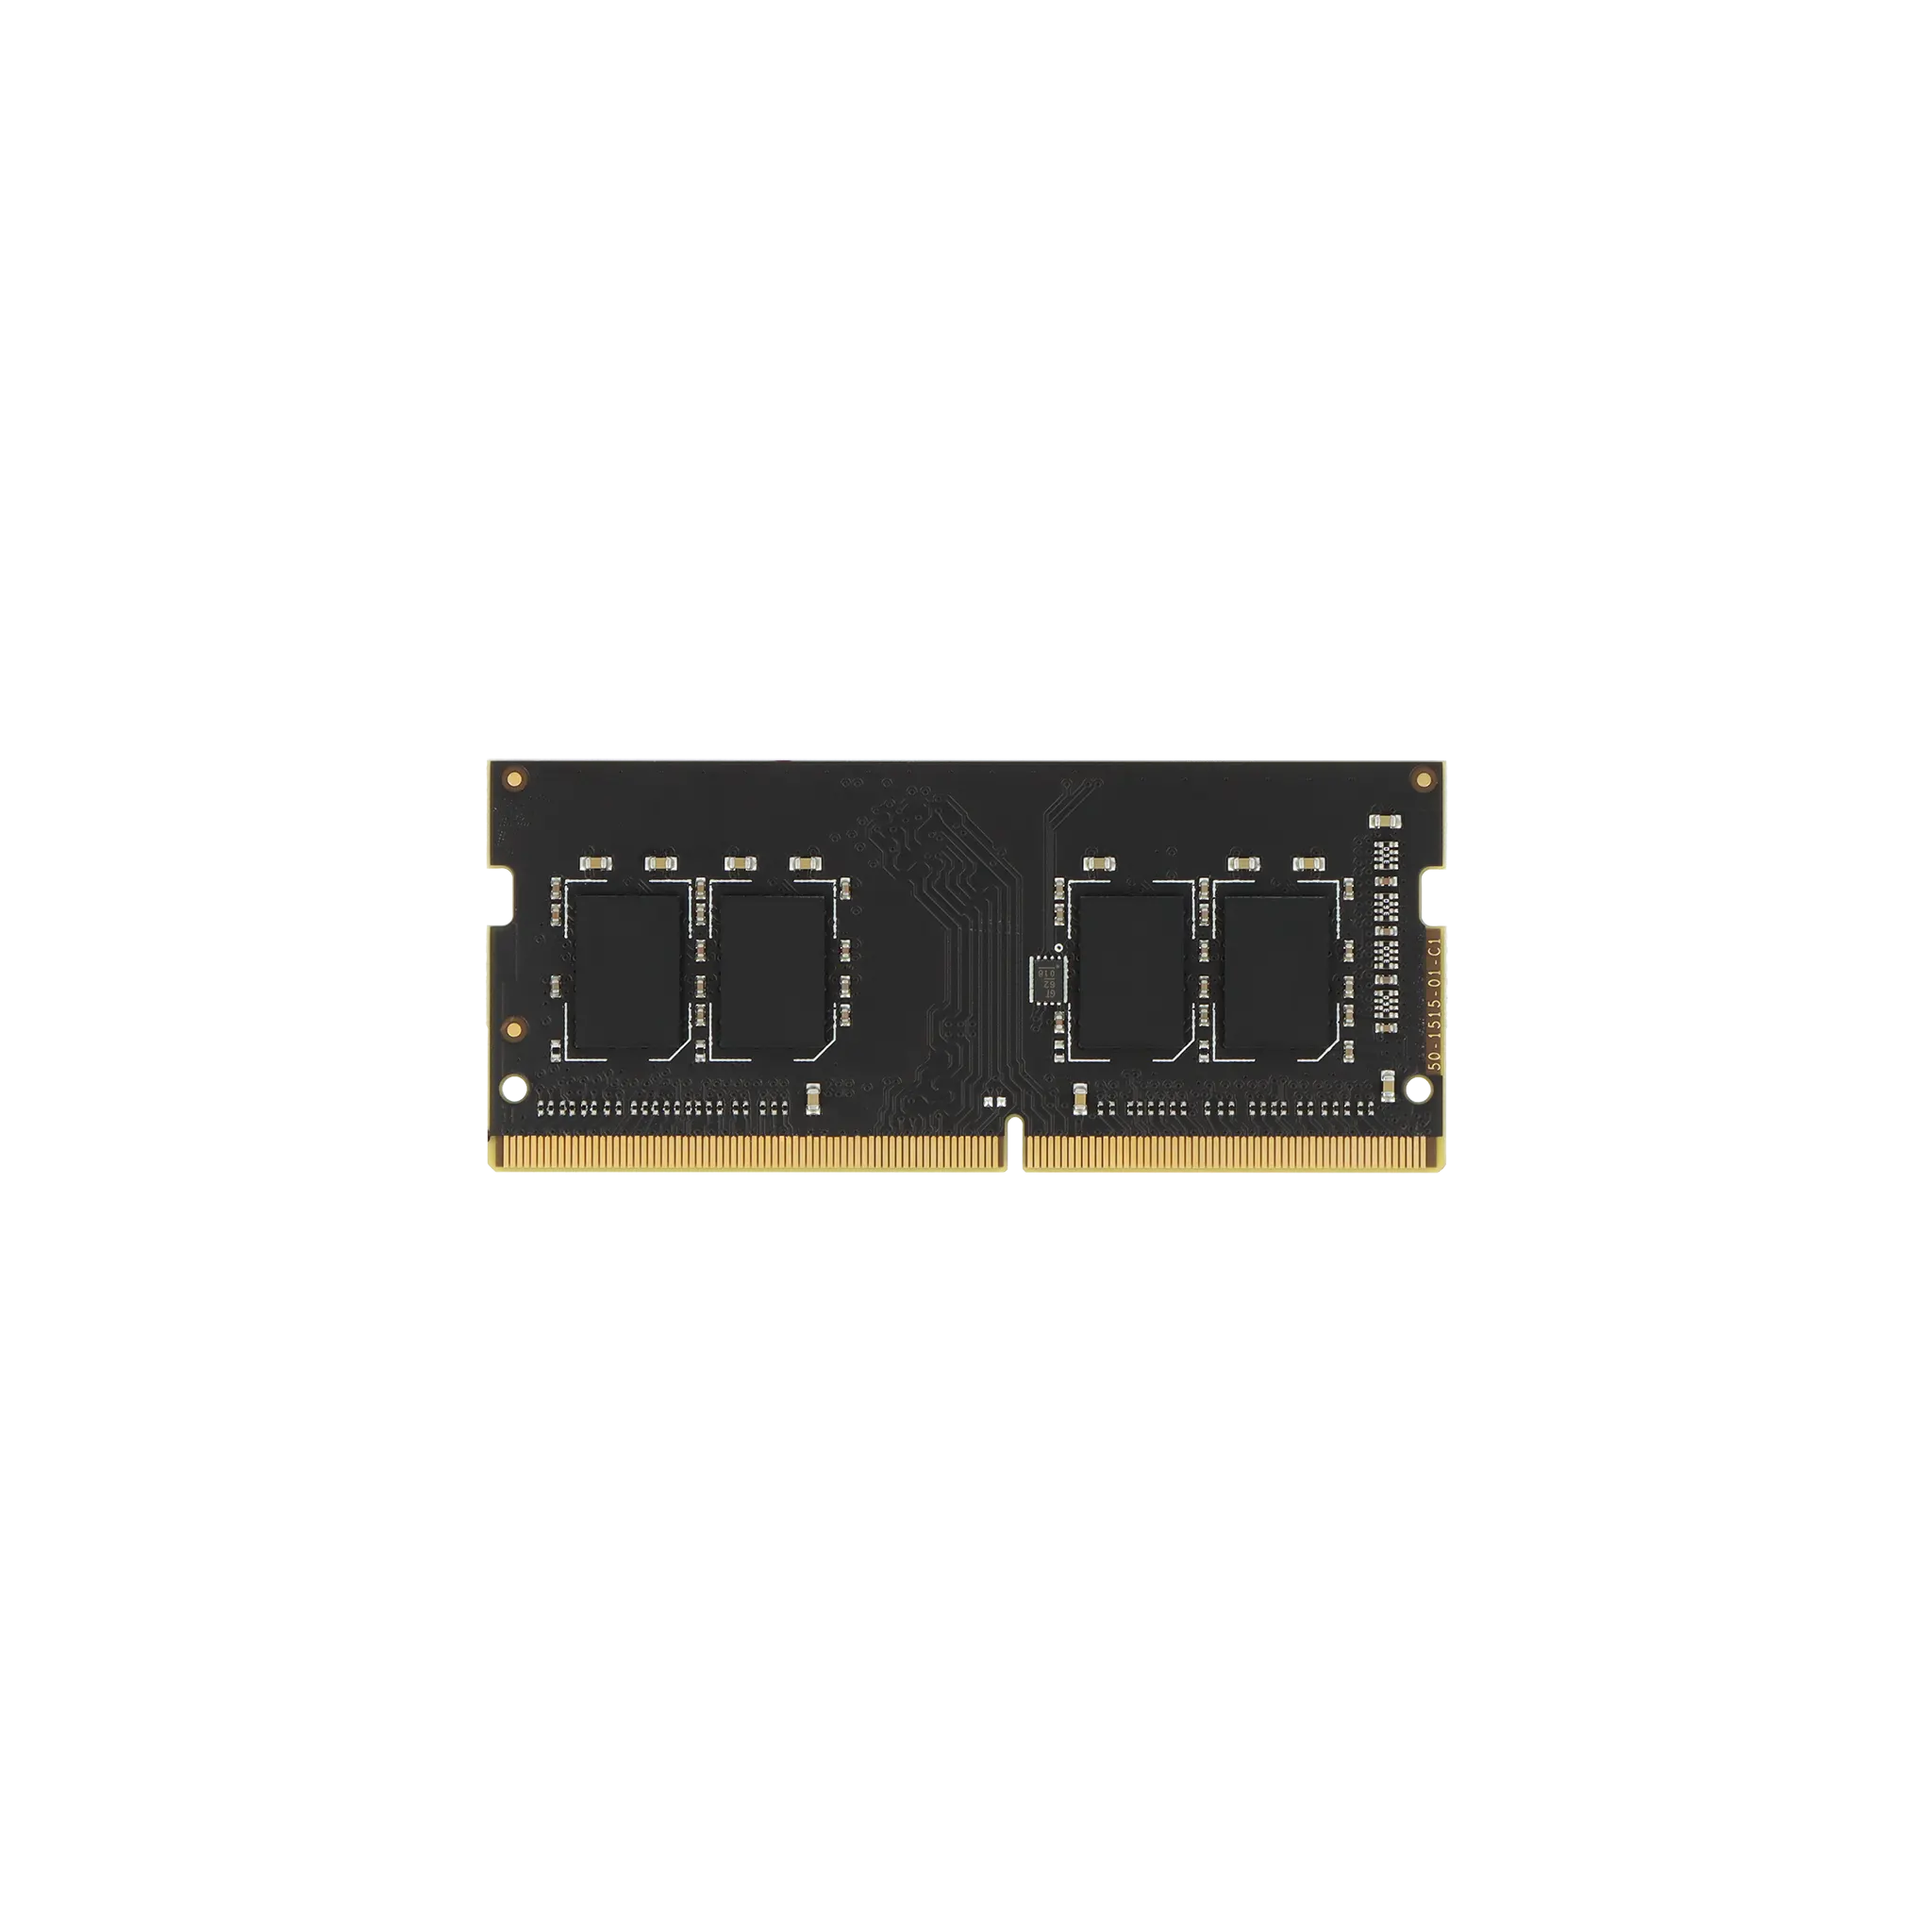 A-Tech 8GB DDR4 2400 MHz SODIMM PC4-19200 (PC4-2400T) CL17 Non-ECC Laptop  RAM Memory Module at